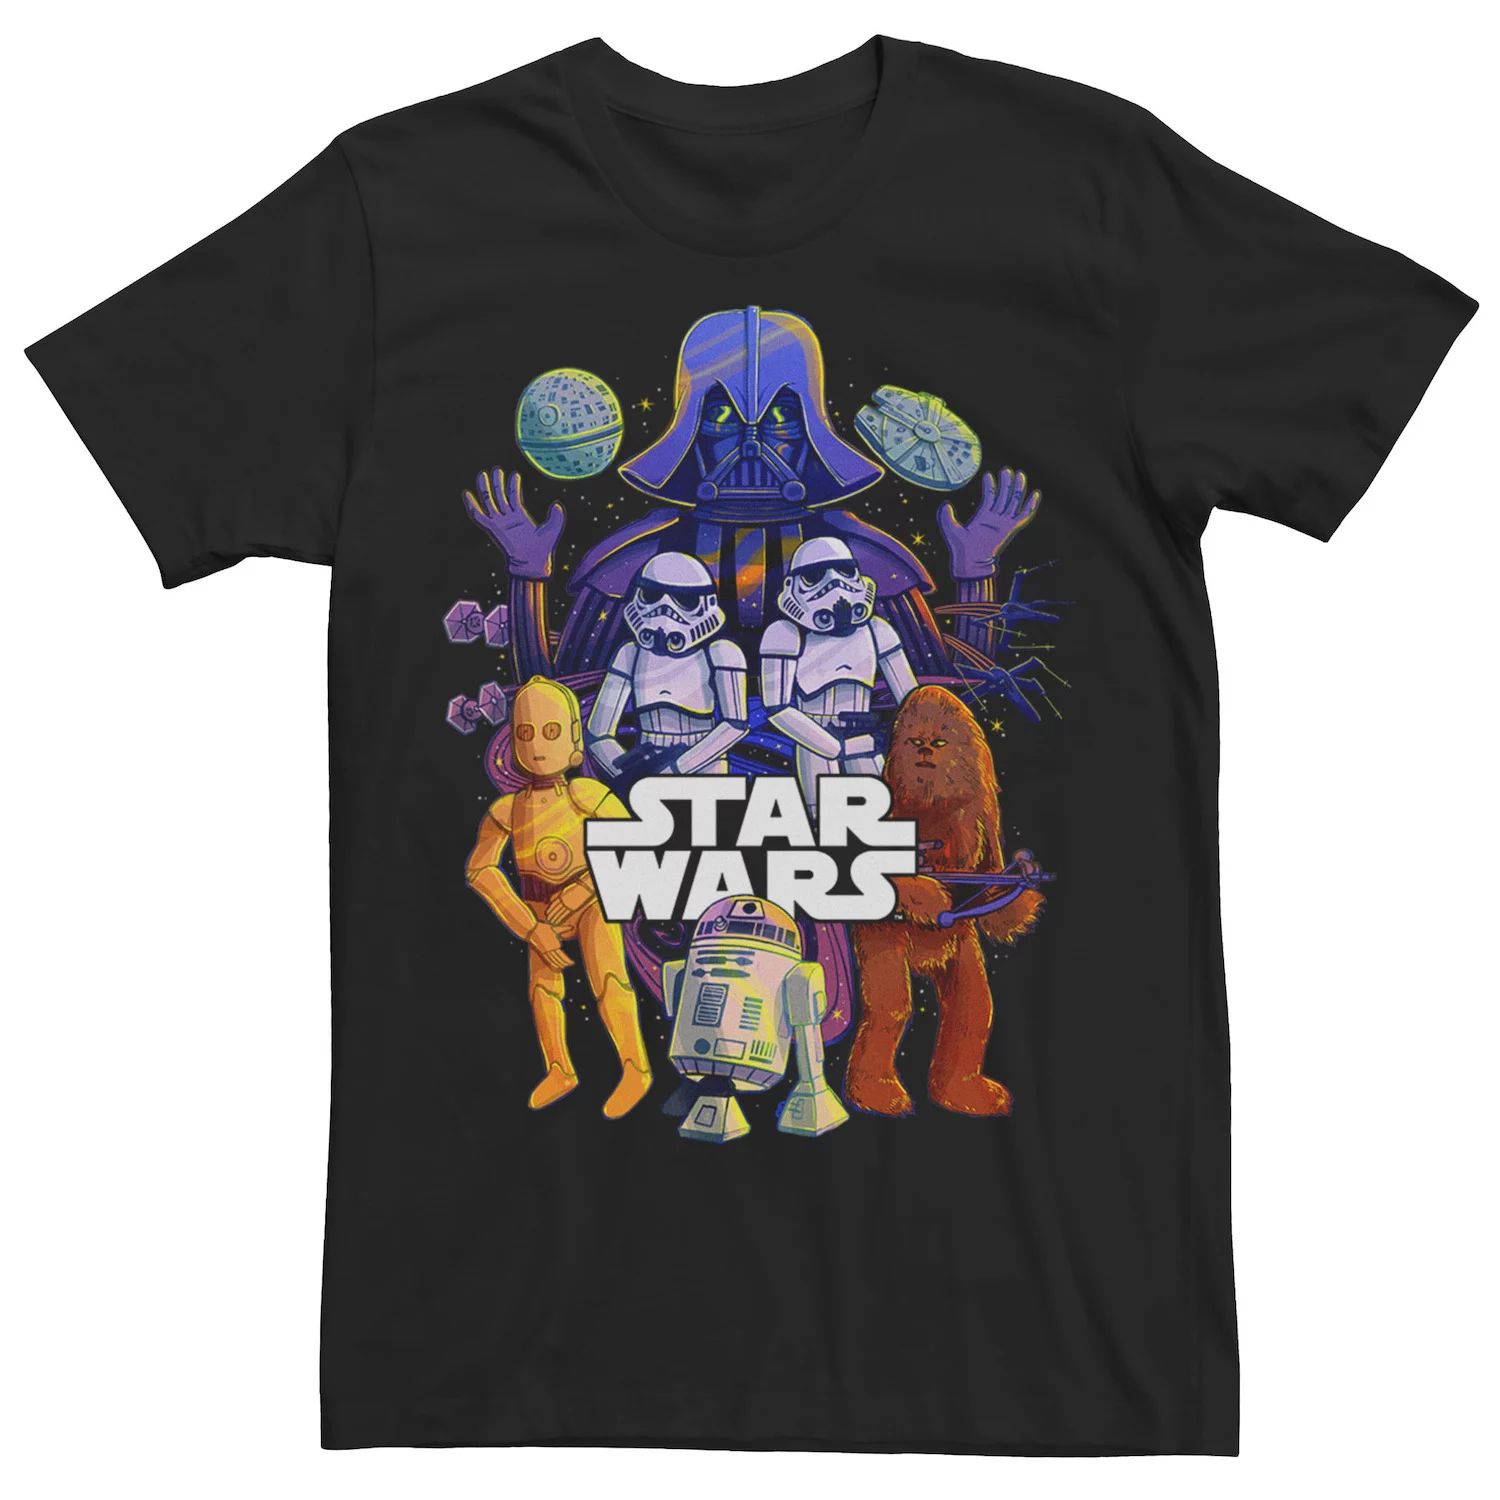 Мужская красочная футболка с графическим рисунком группы Star Wars темно фиолетовая мужская черная футболка с графическим рисунком футболка с фанатом рок группы размер s 3xl модная футболка топ футболка